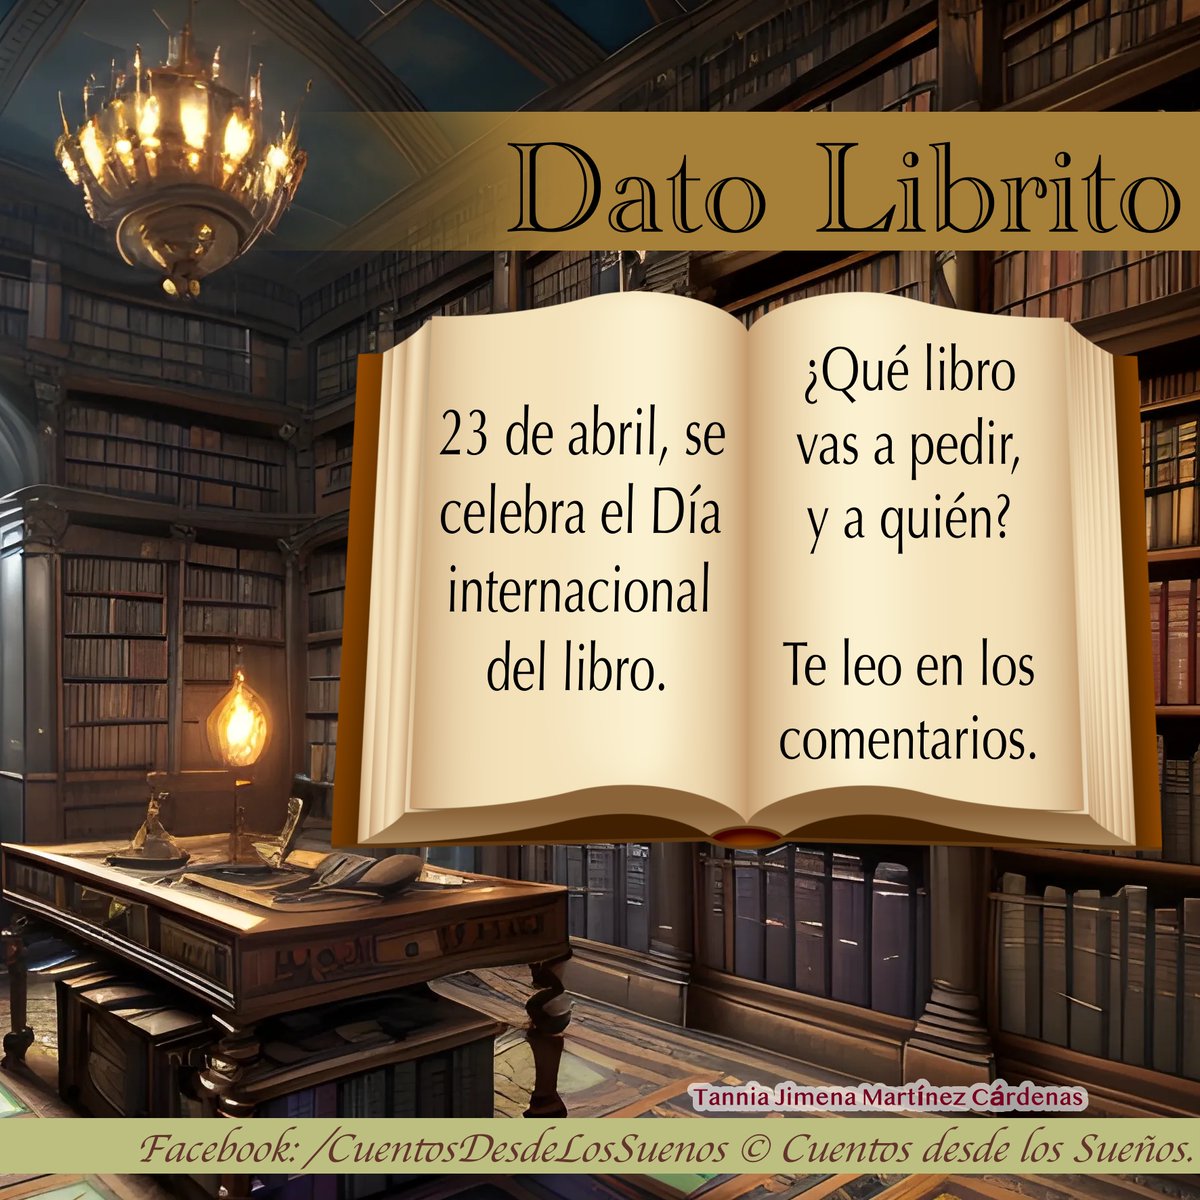 #DatoCurioso #libro #book #diadellibro #ebook #23Abril #diainternacional #hagamoslectores